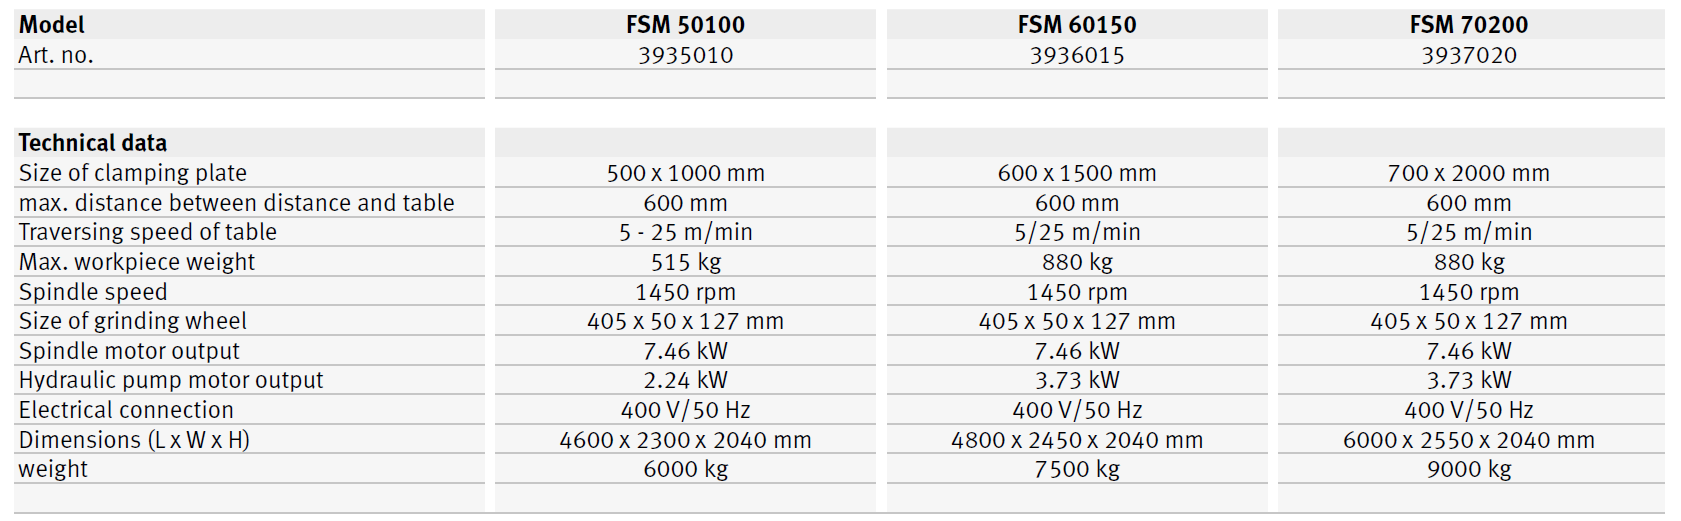 FSM 50100 / FSM 60150 / FSM 70200